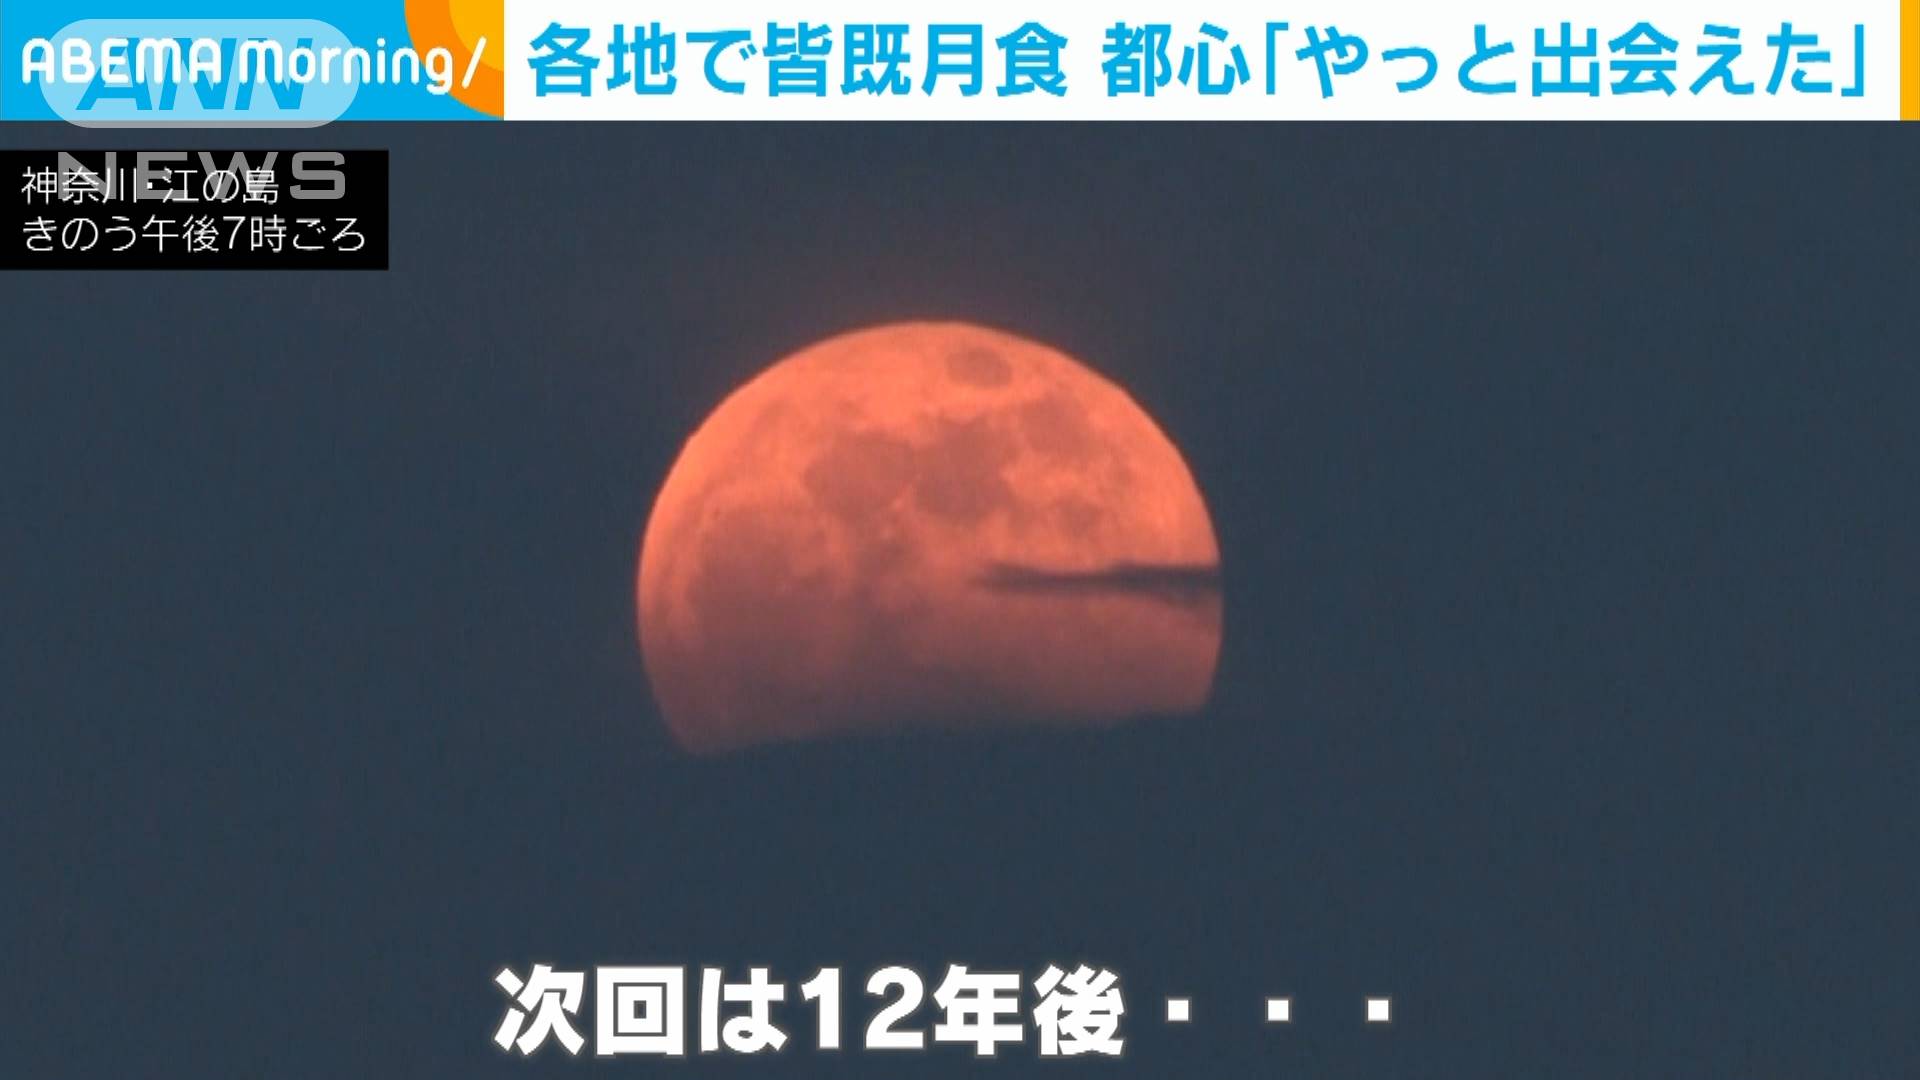 やっと見えた 都心の空にスーパームーン皆既月食 テレ朝news テレビ朝日のニュースサイト